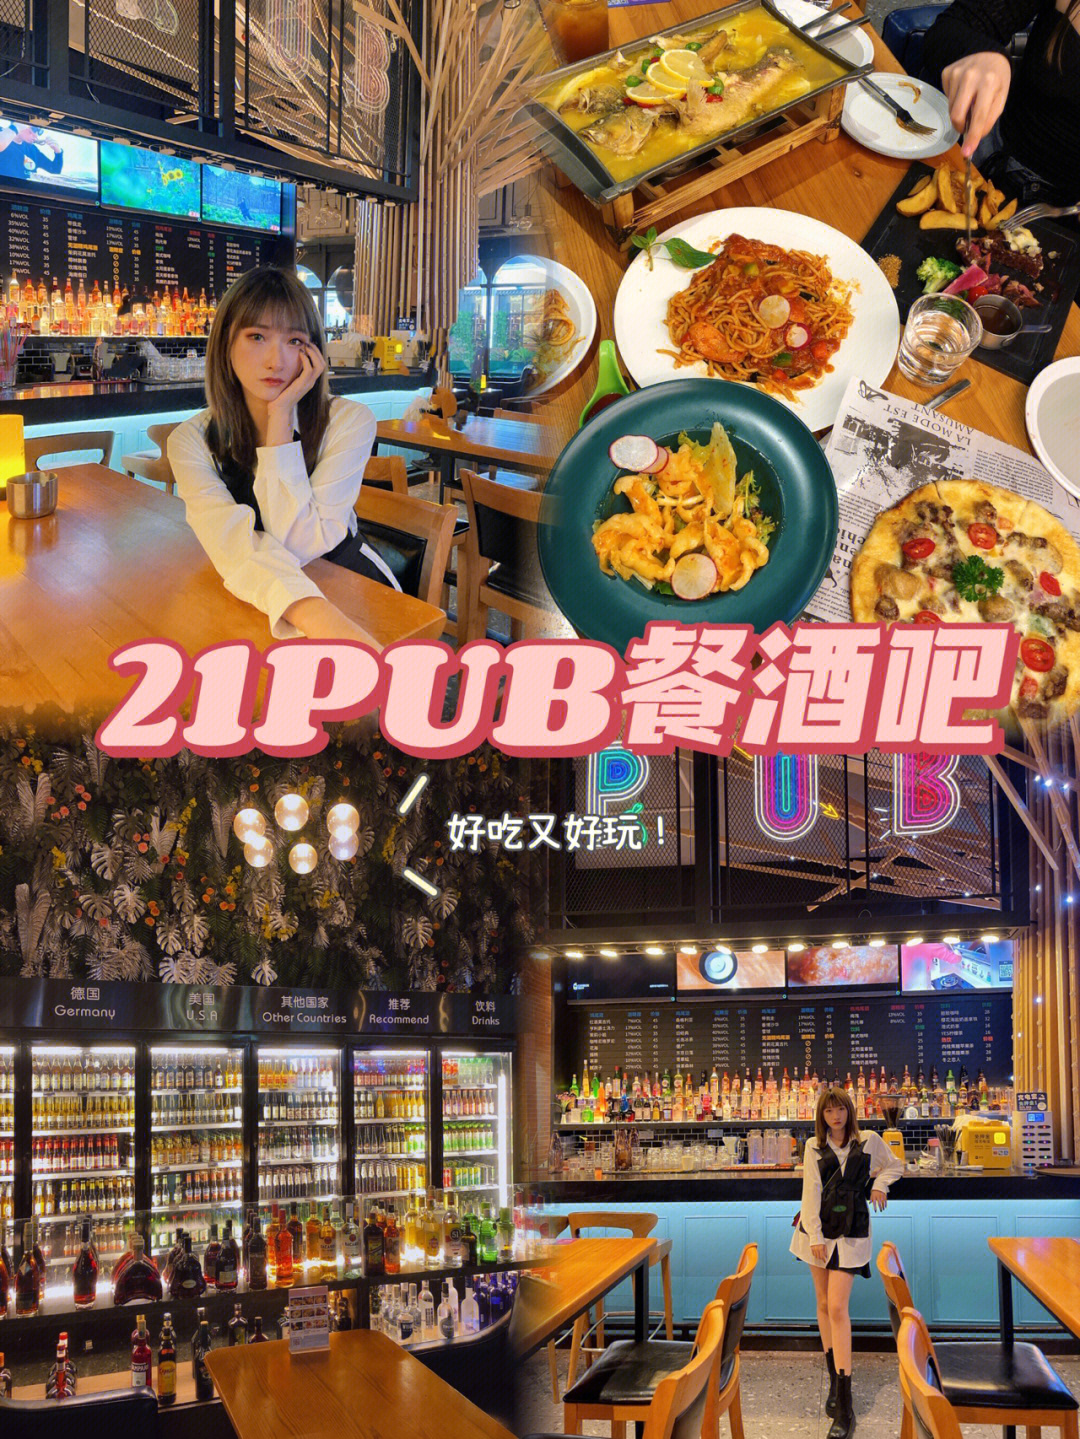 中山探店cococity里的宝藏店21pub餐酒吧